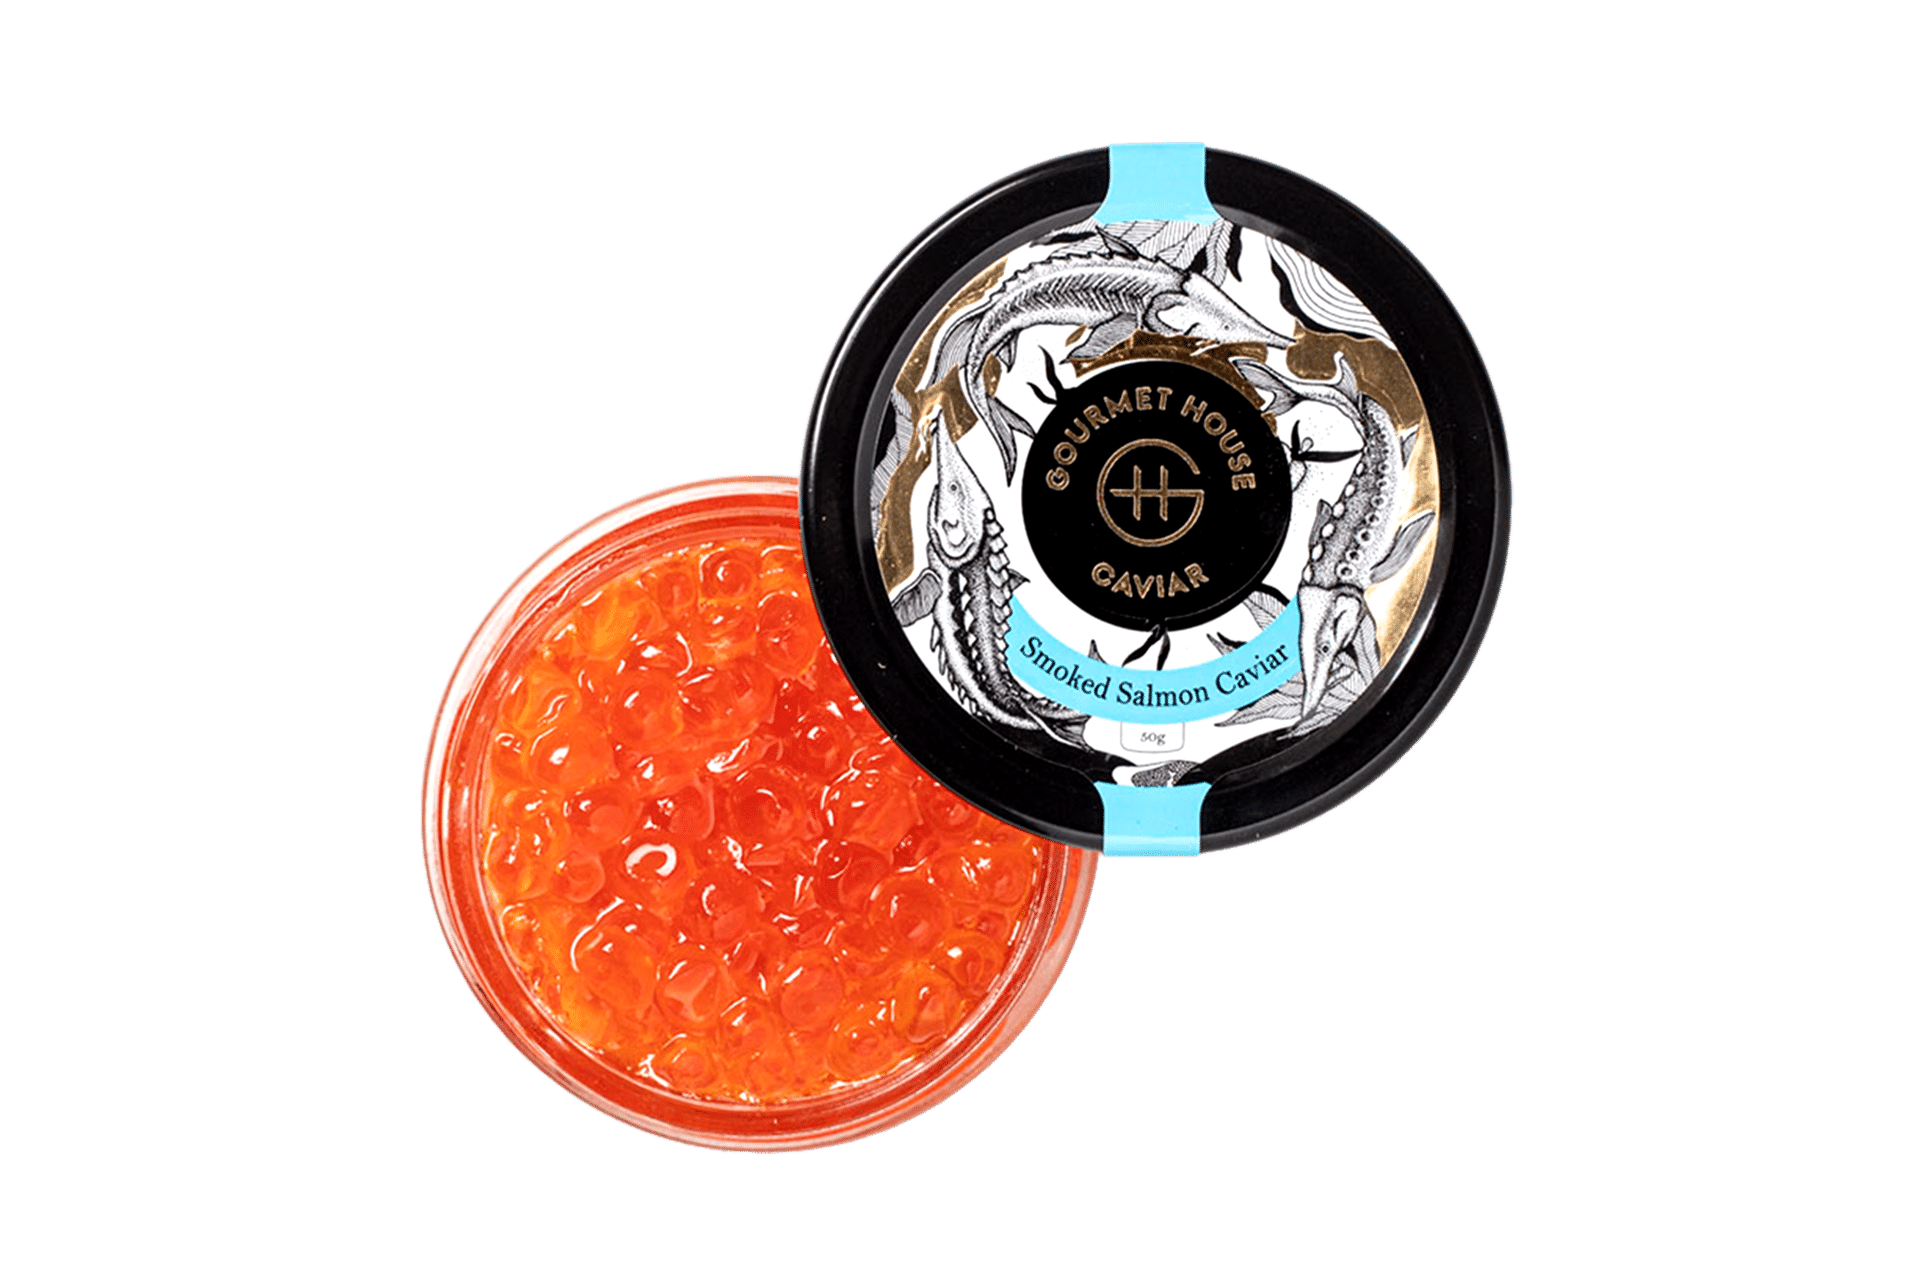 Smoked Salmon Caviar